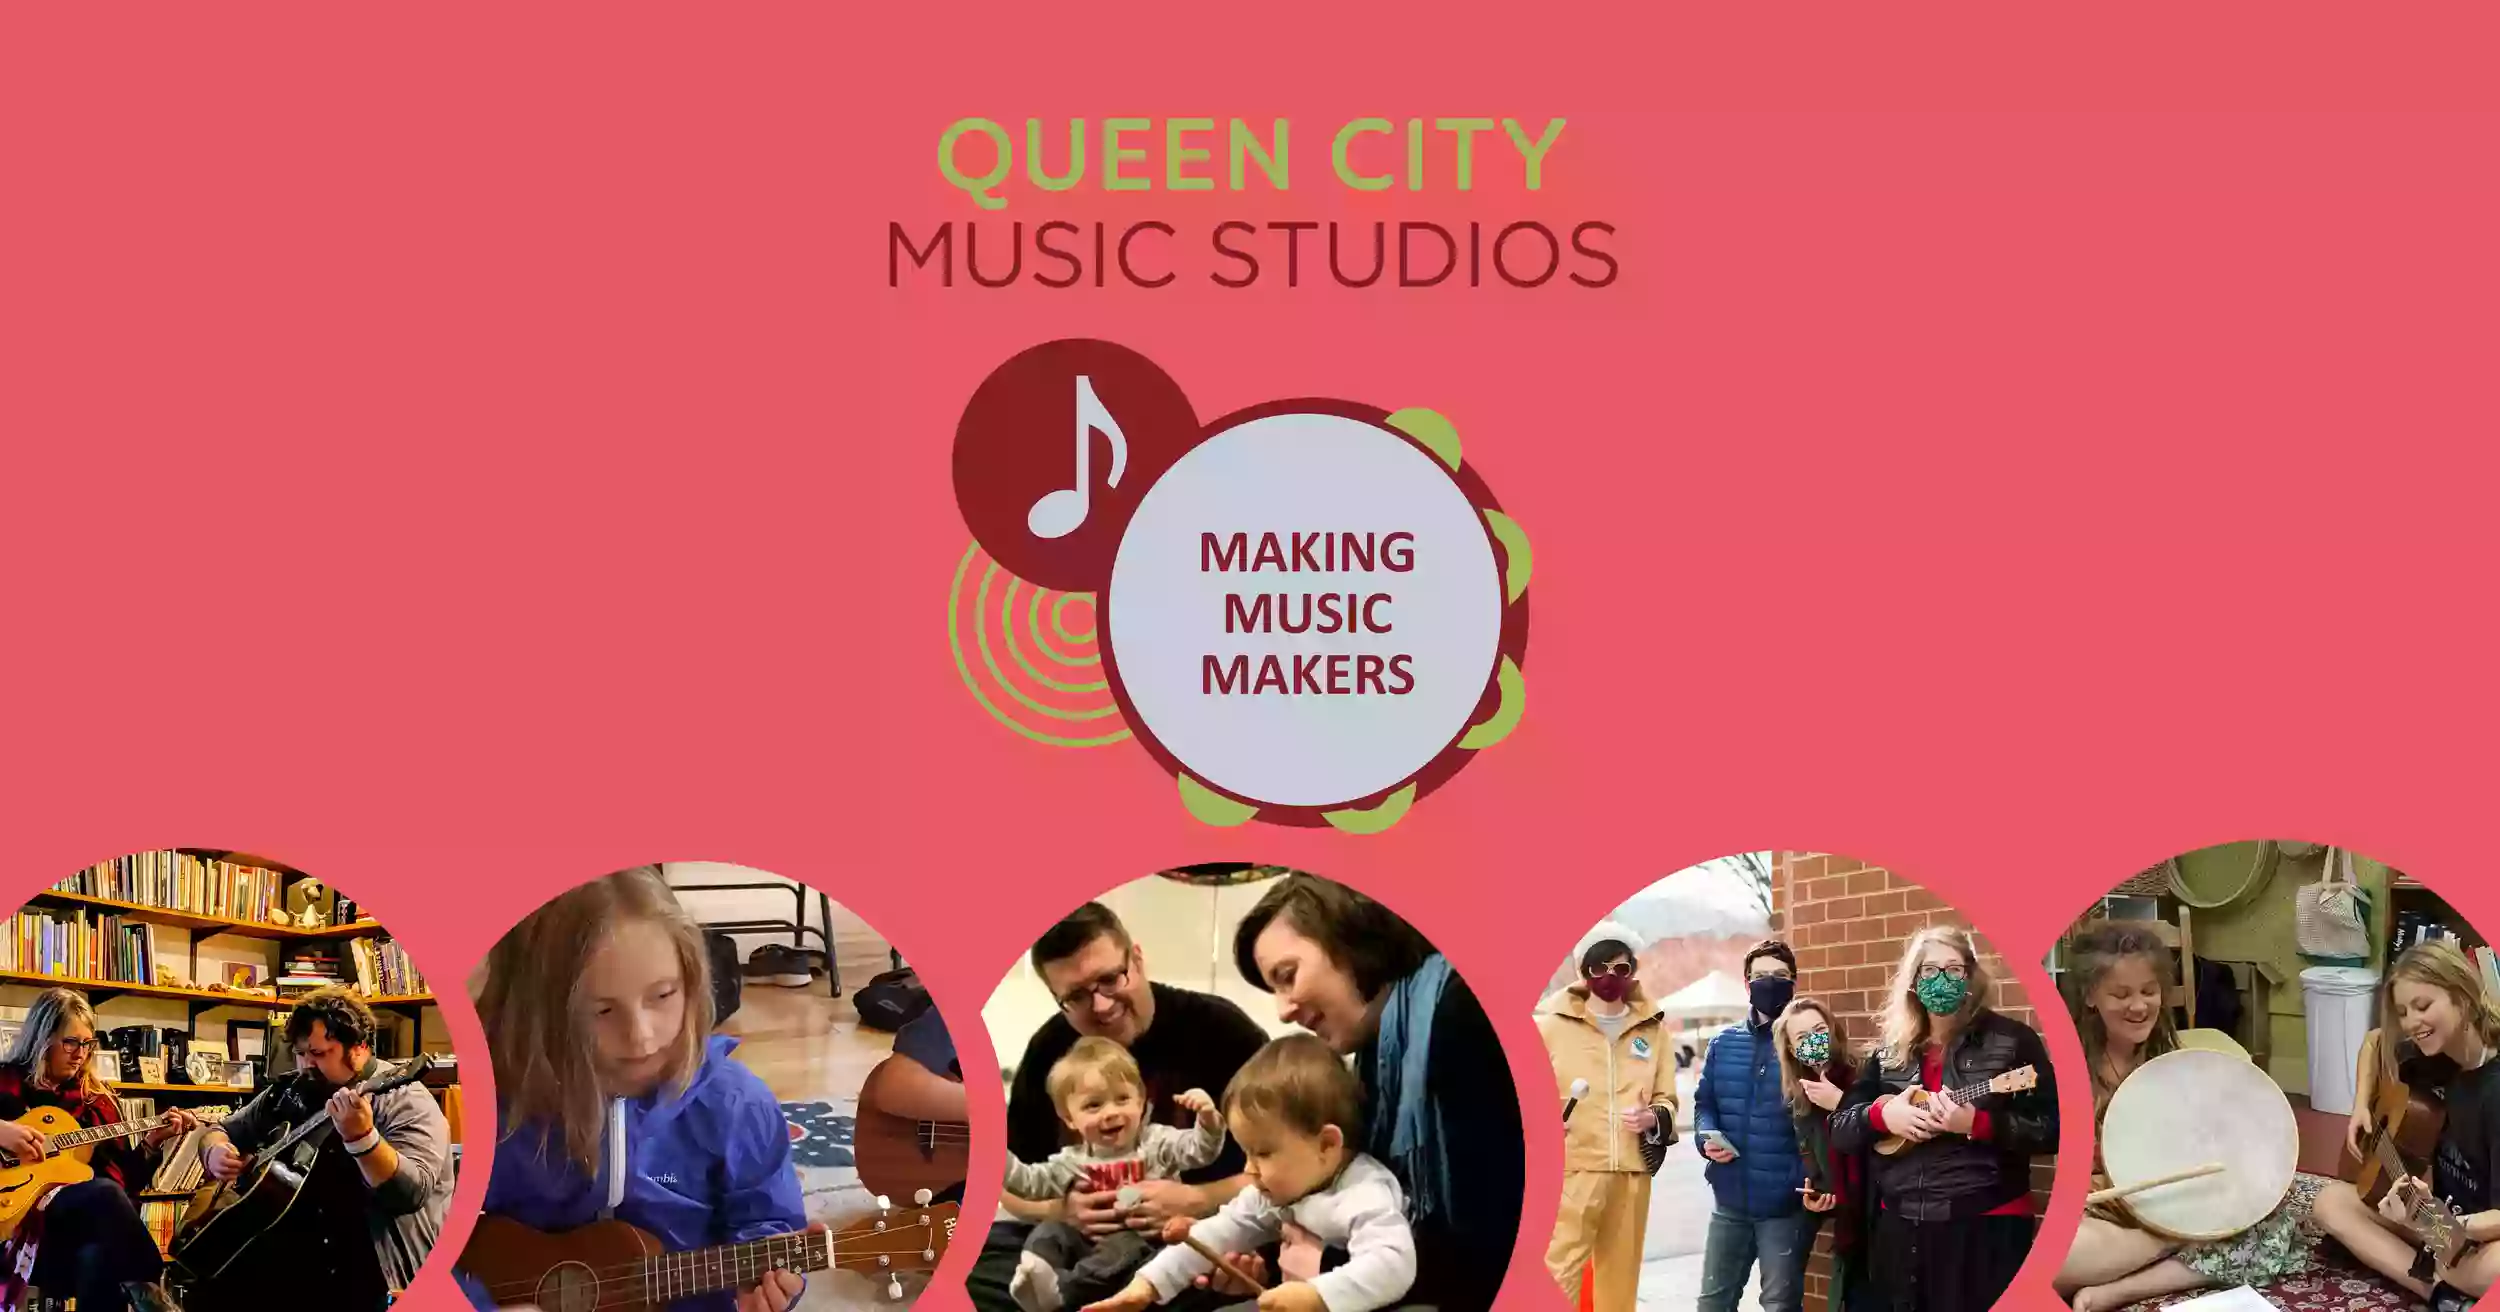 Queen City Music Studios